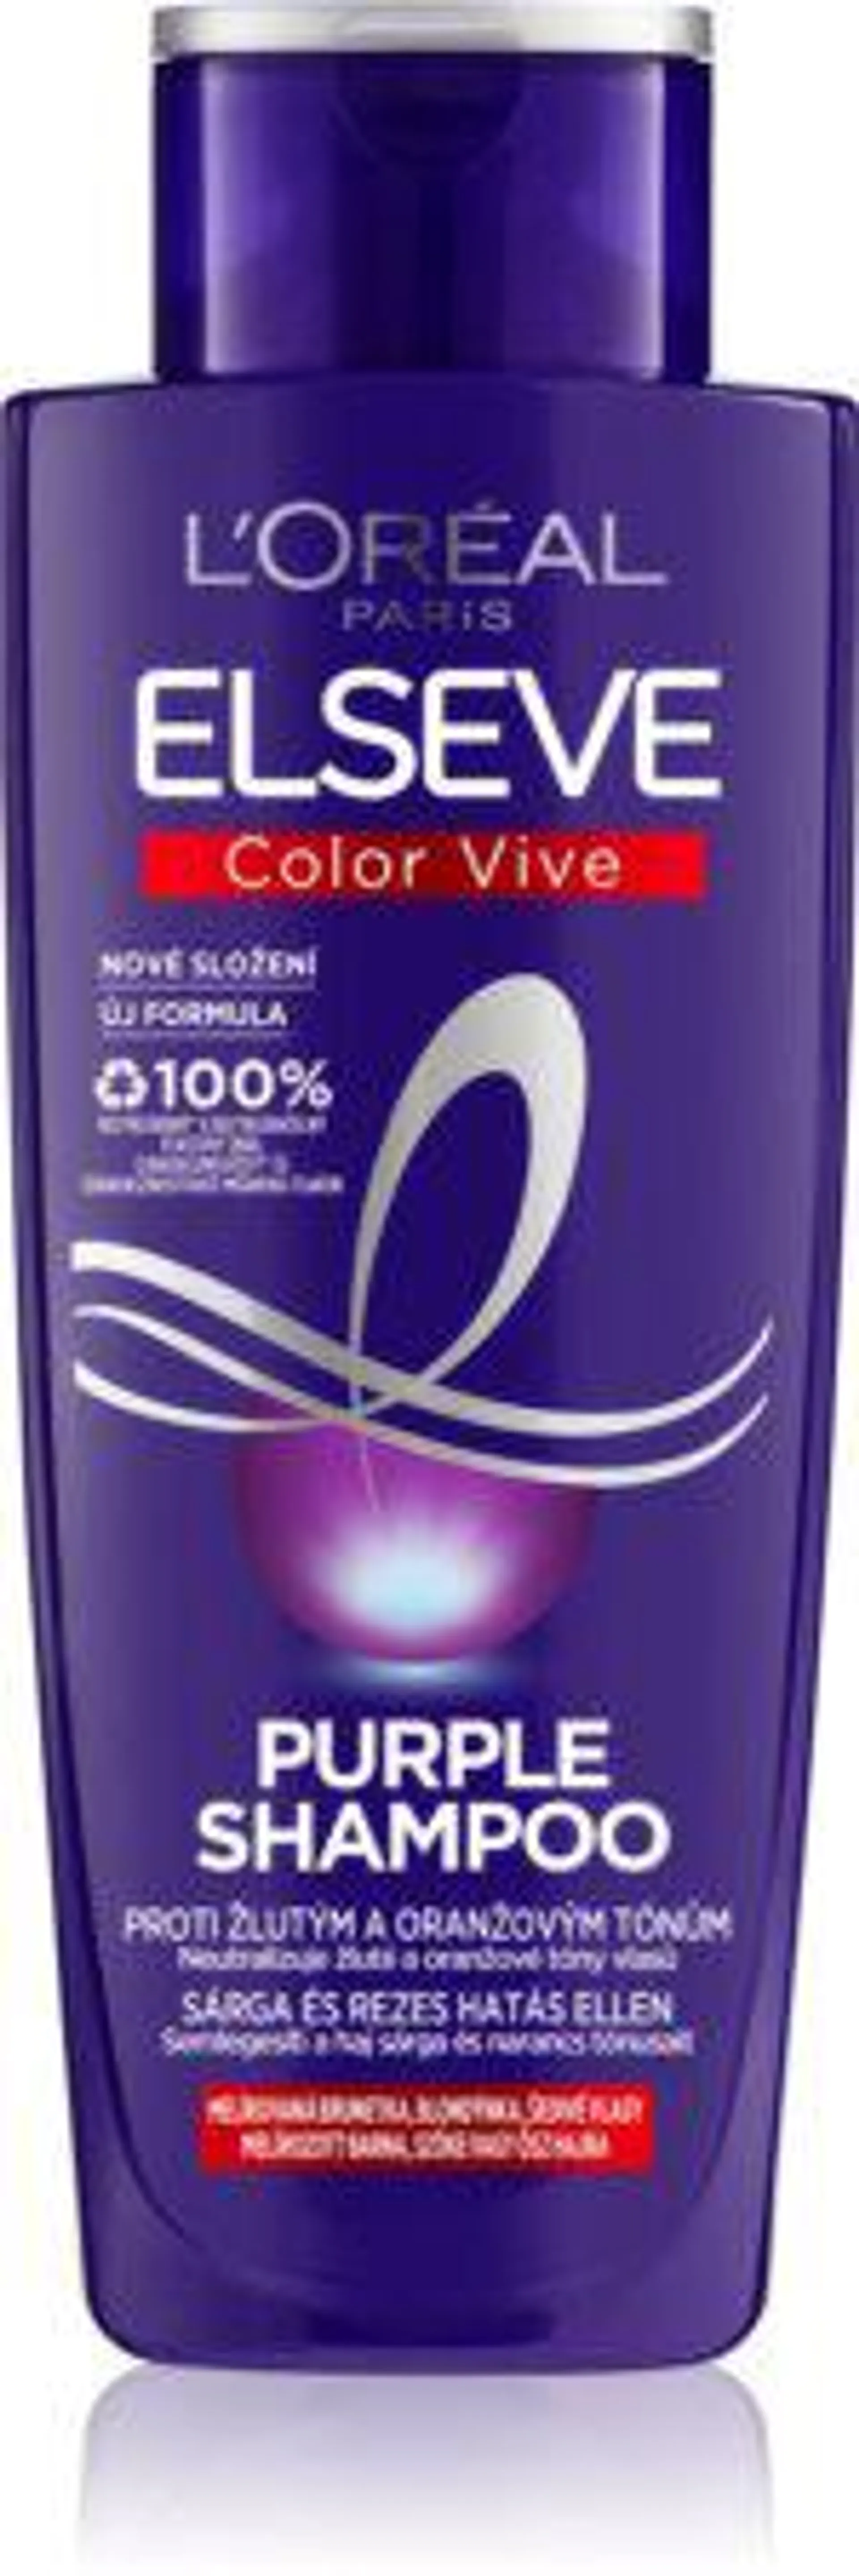 Elseve Color-Vive Purple